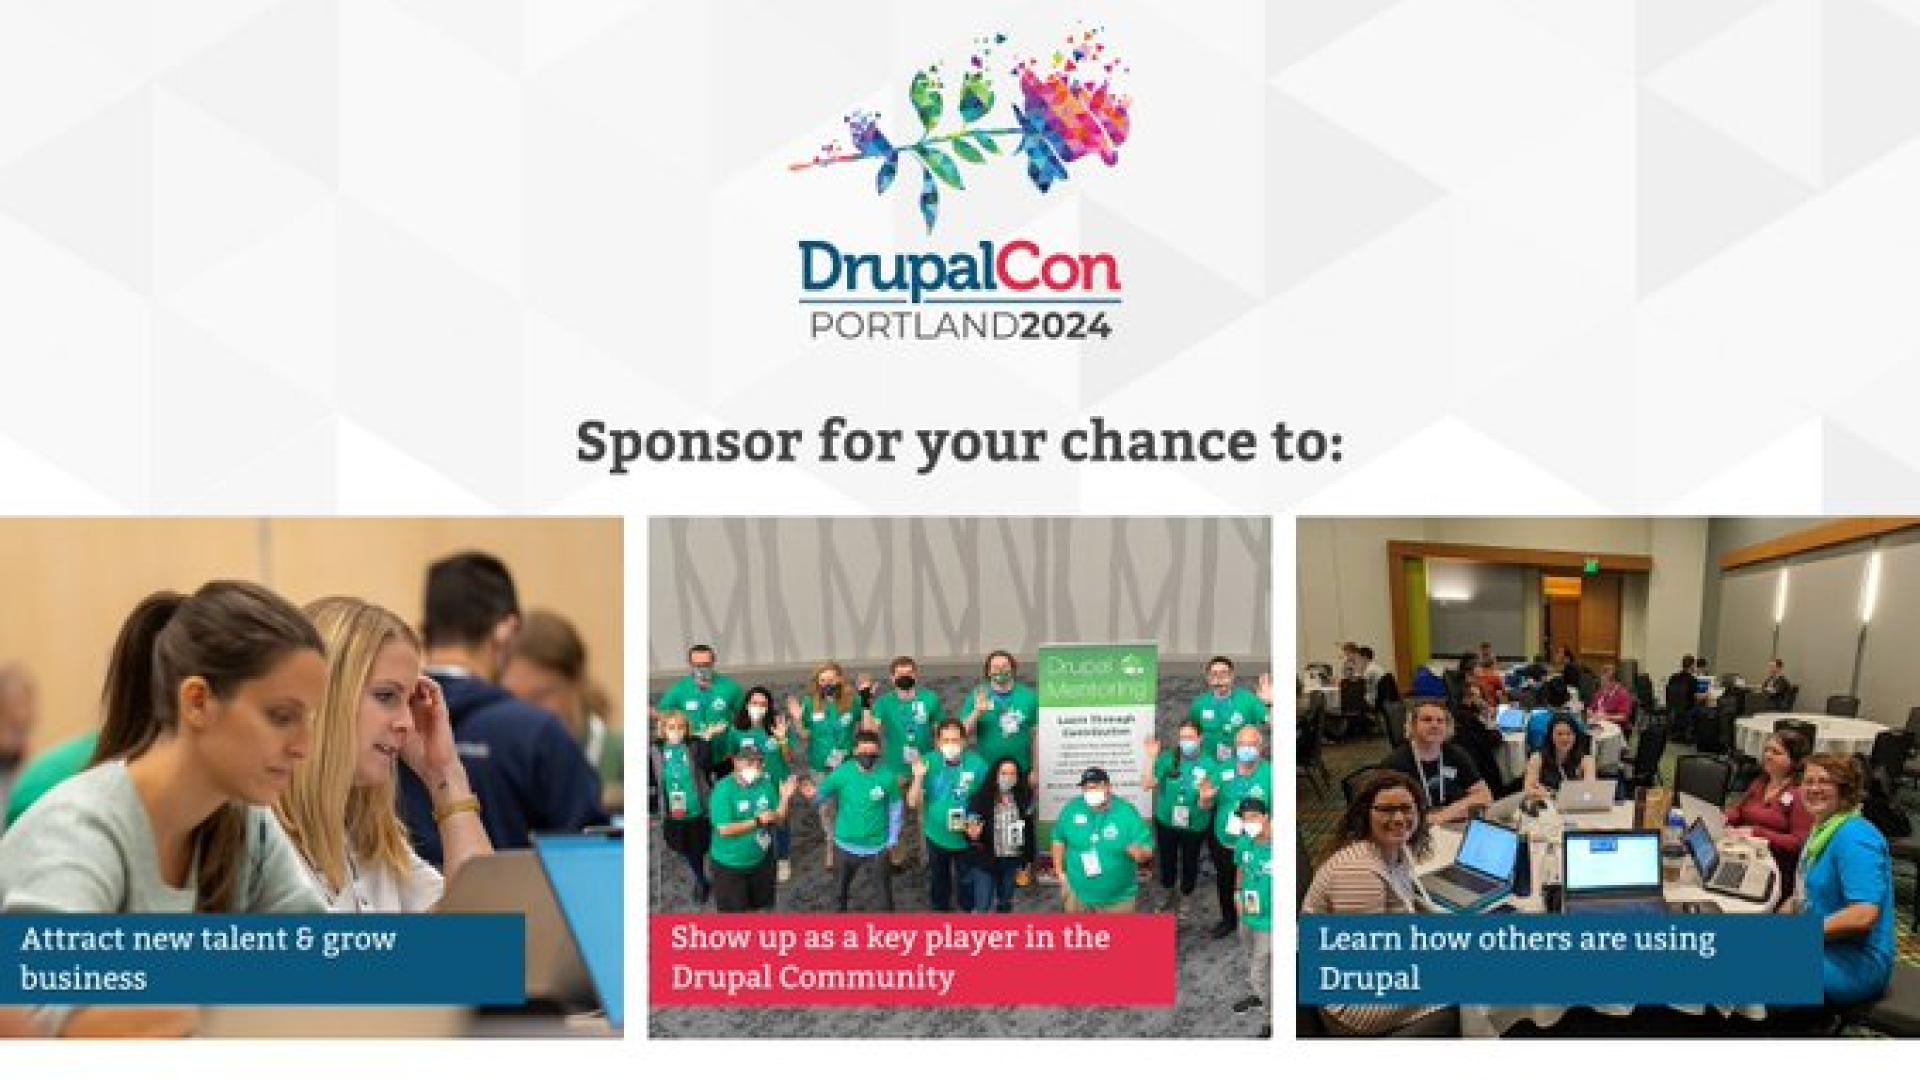 DrupalCon Portland 2024 Sponsorship Opportunities Await